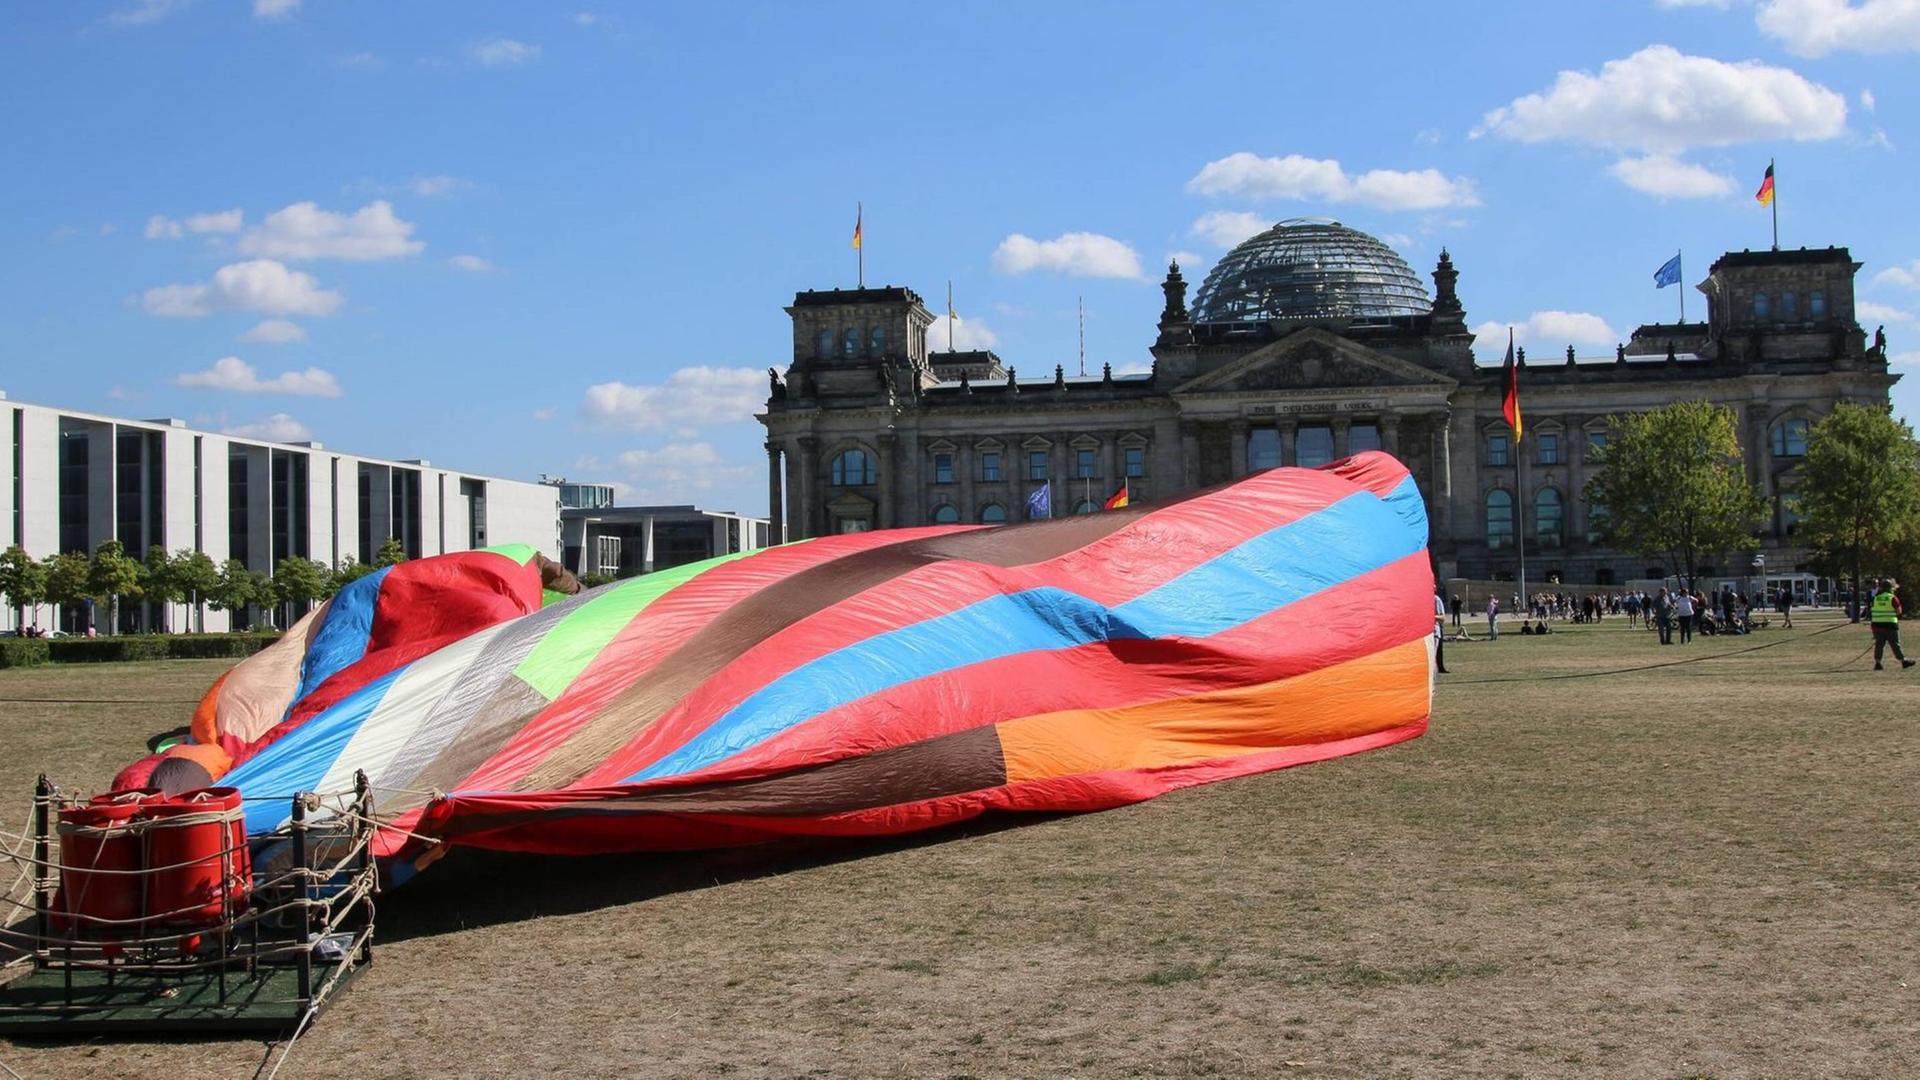 Fluchtballon aus der damaligen DDR zum Kinofilm Ballon in Berlin